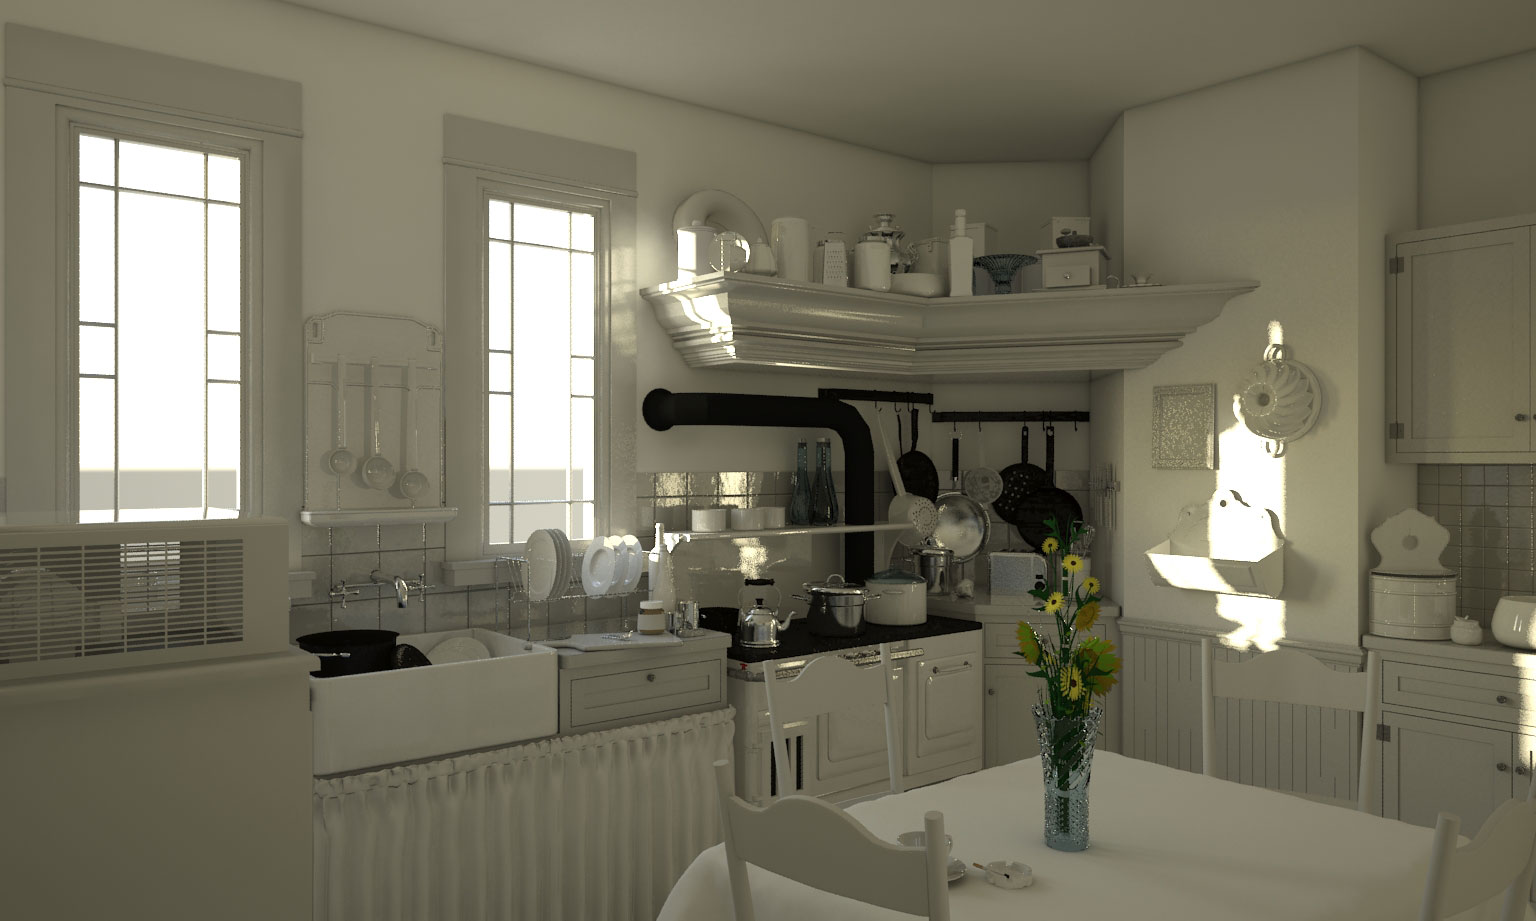 3D-animated-movie-kitchen-in-development